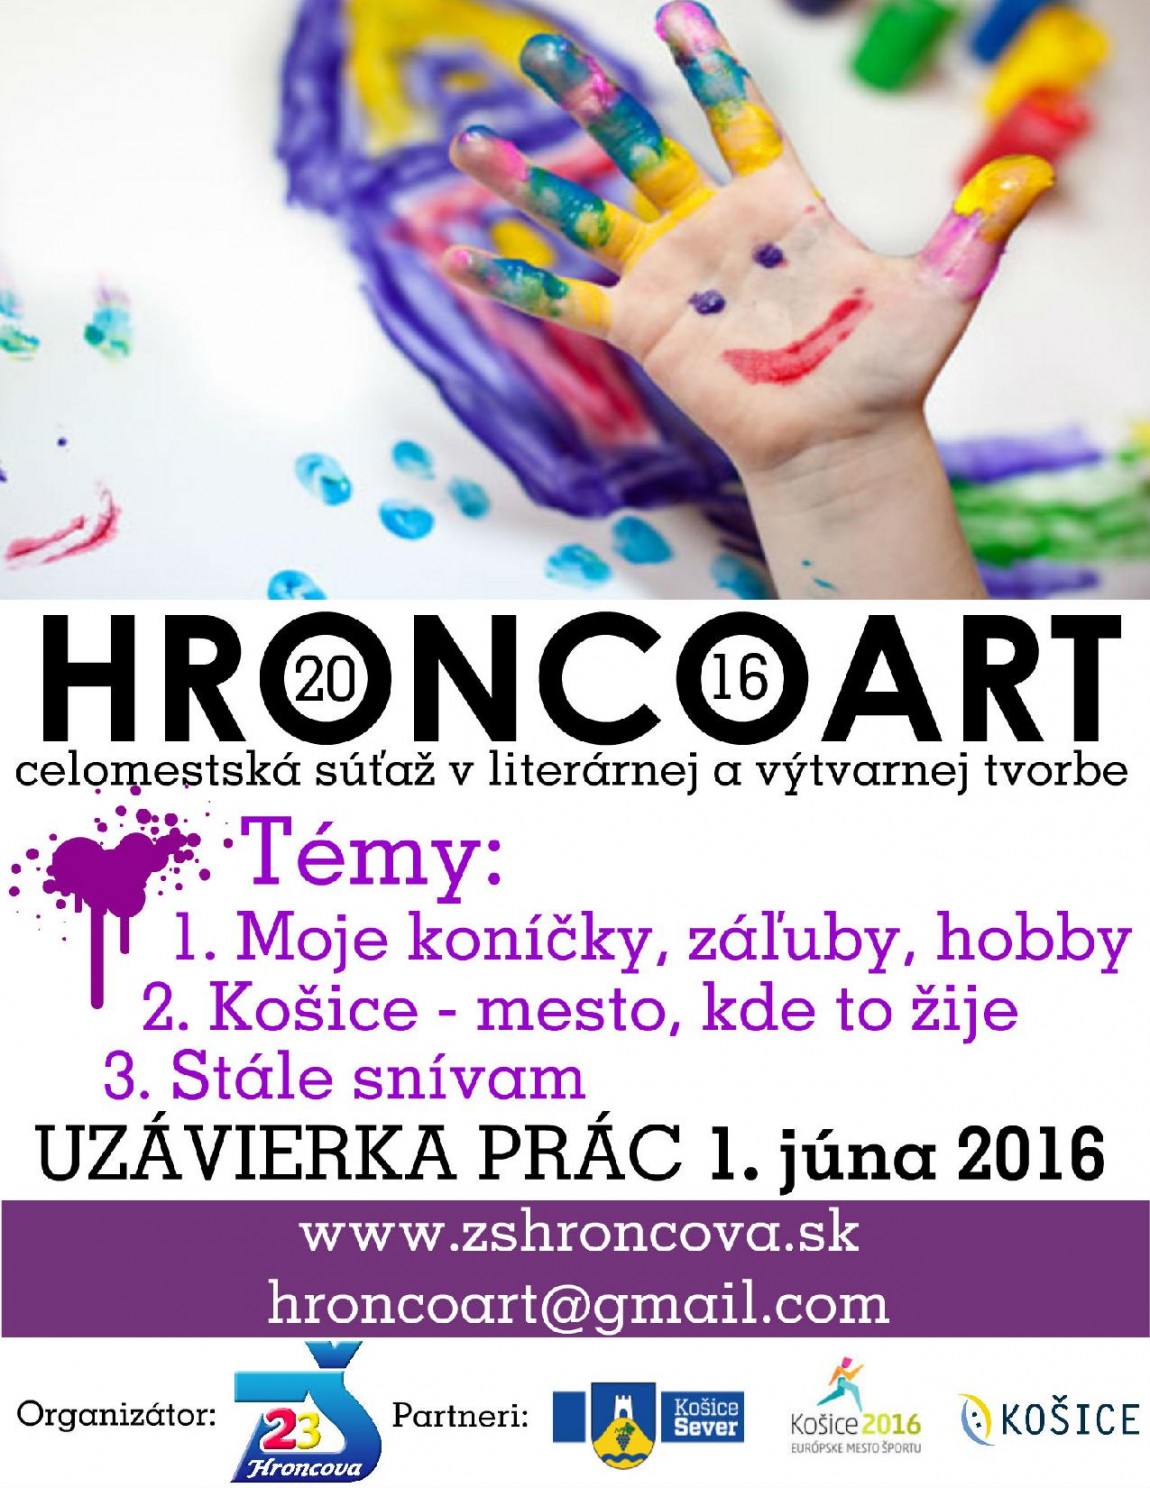 HroncoArt – propozície